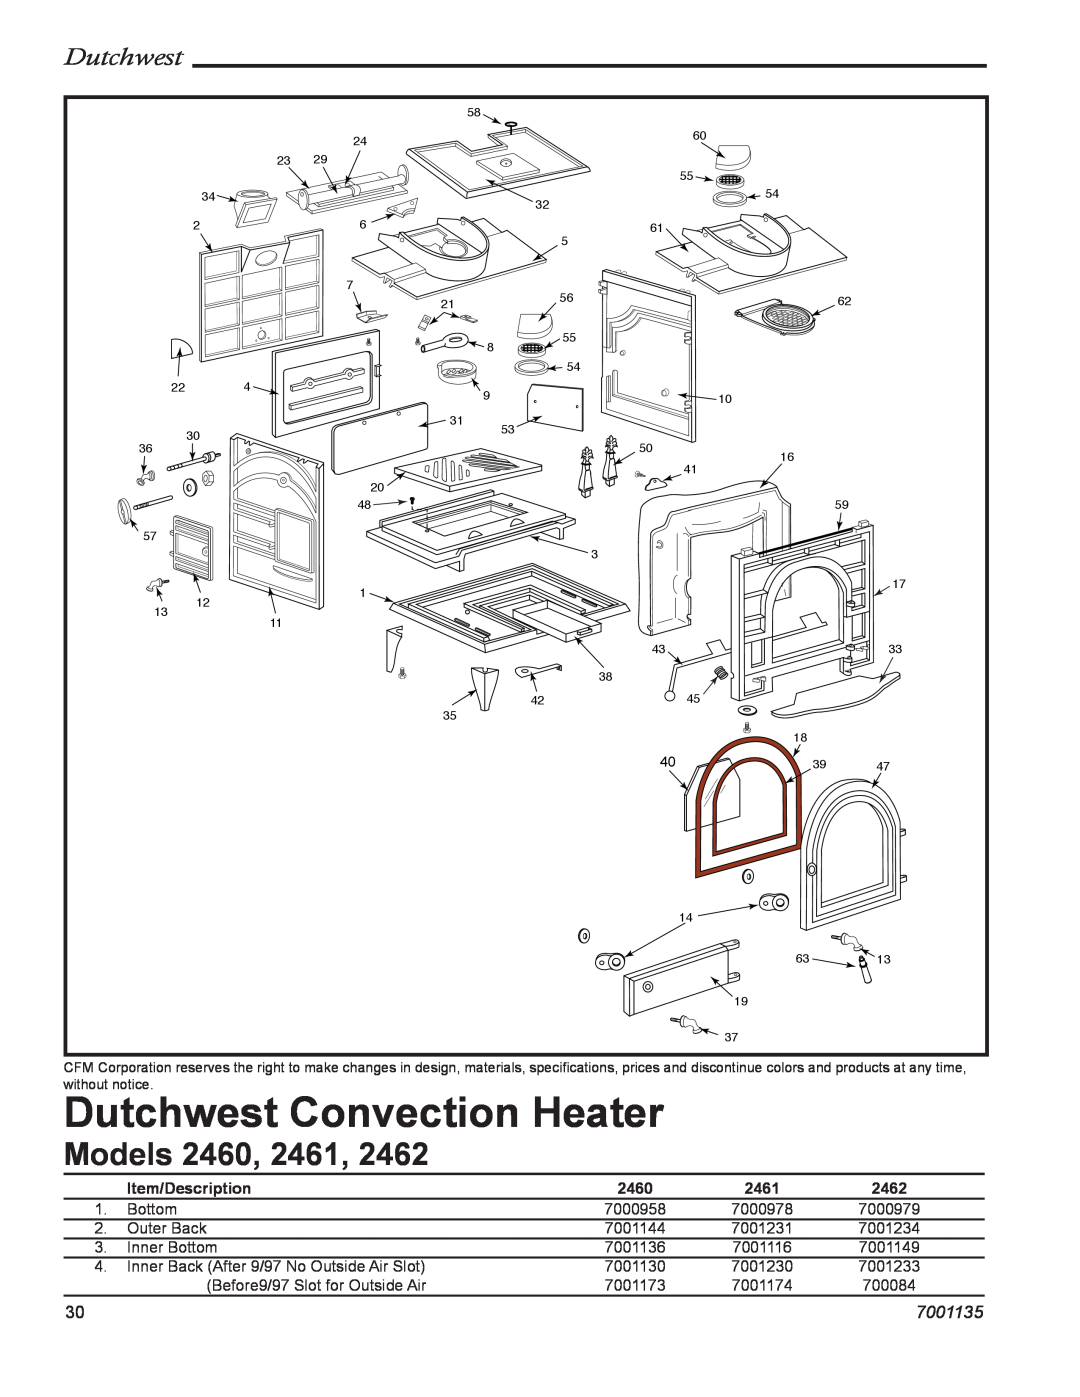 CFM Corporation 2462, 2460, 2461 manual Dutchwest Convection Heater, Models, 7001135, Item/Description 